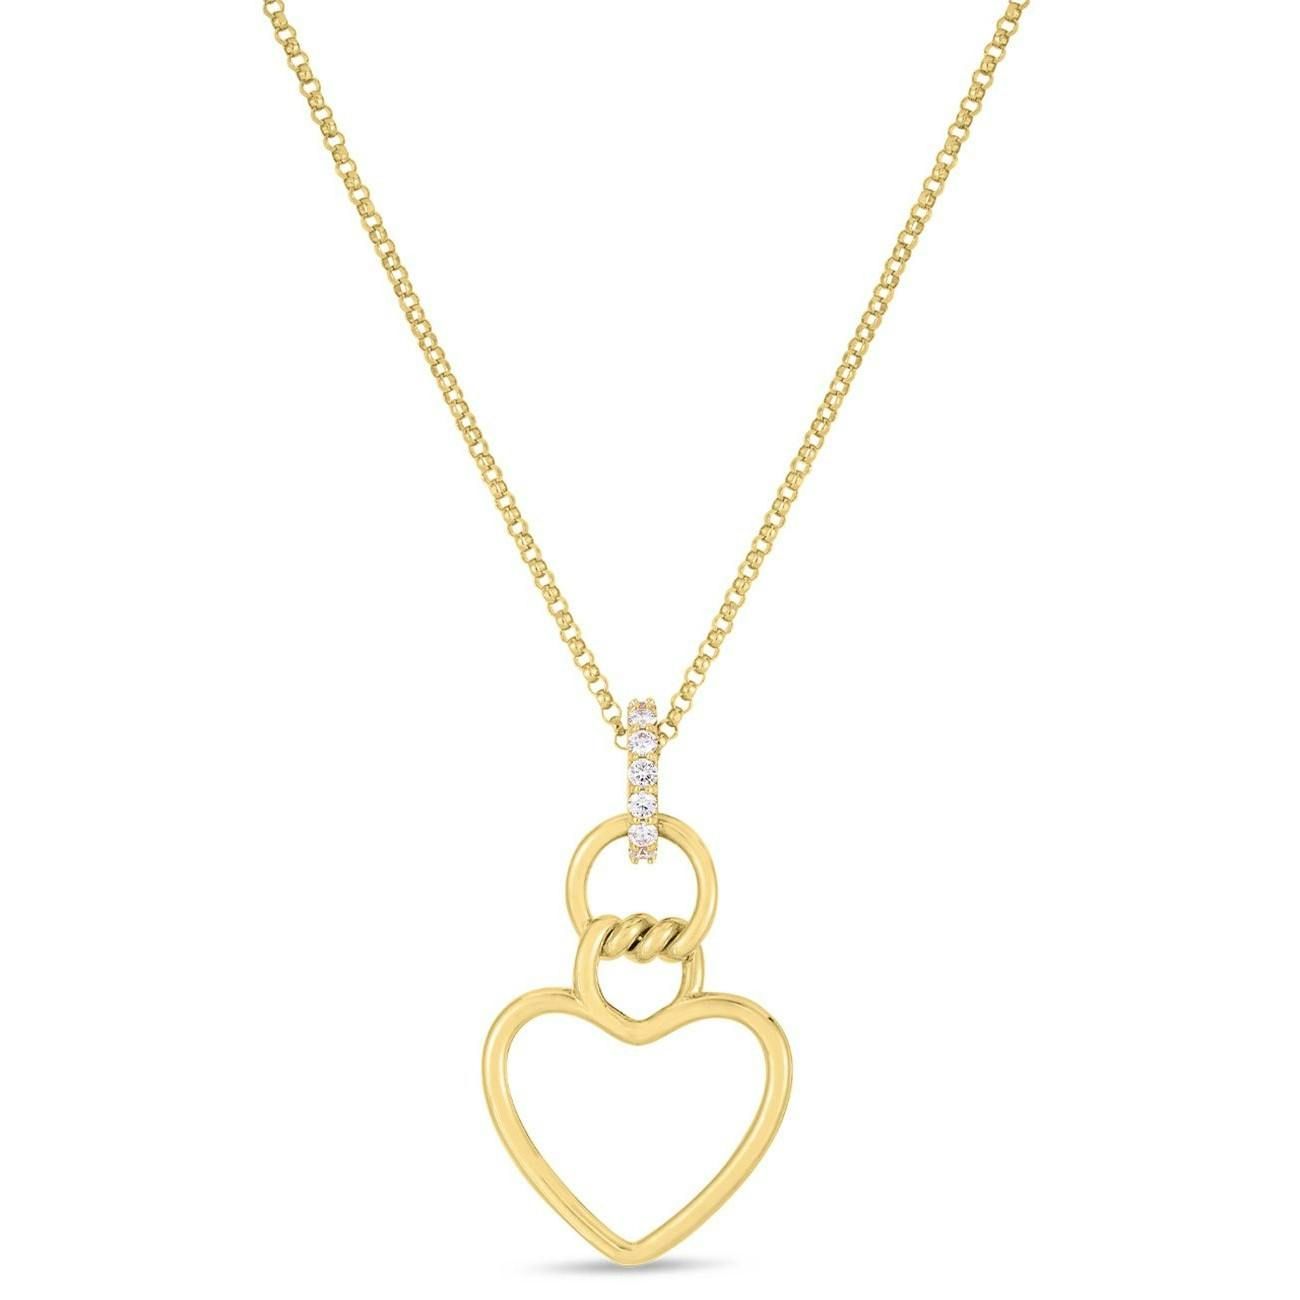 Roberto Coin Cialoma Heart Pendant Yellow Gold Necklace 0